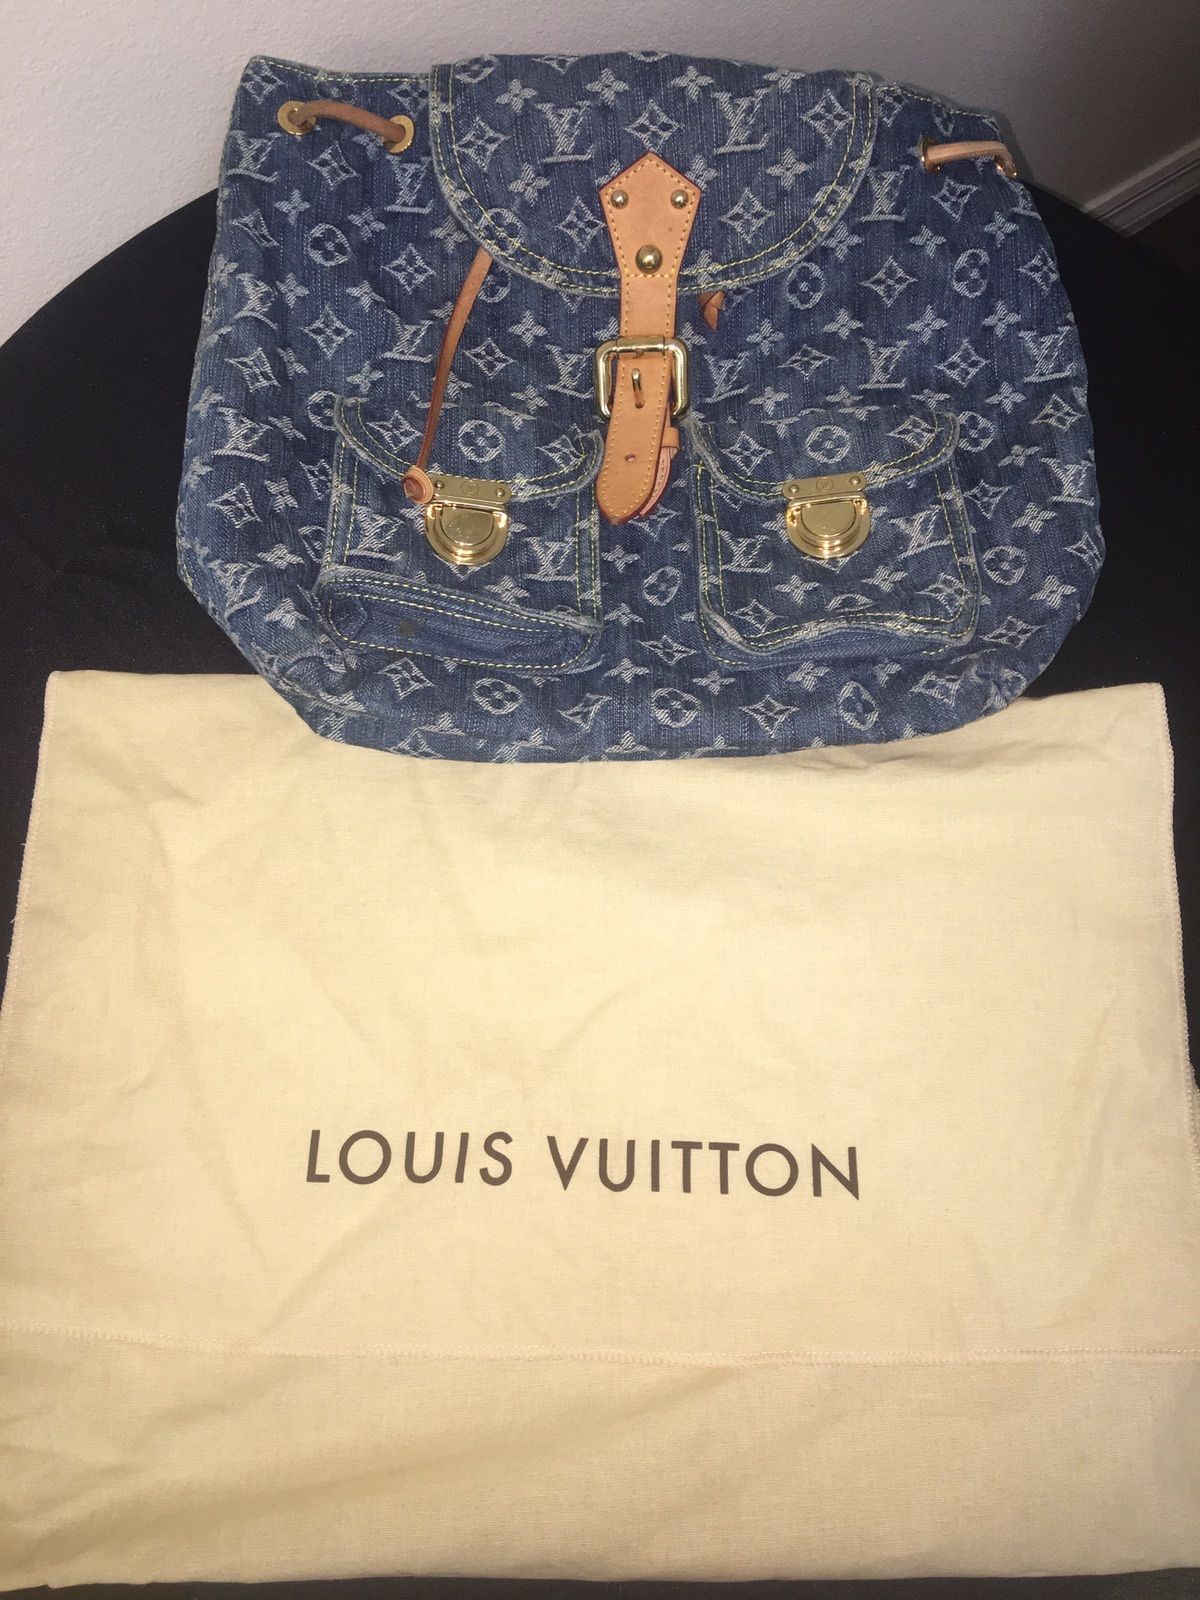 Les sacs à dos Louis Vuitton les plus chères vendus sur eBay !